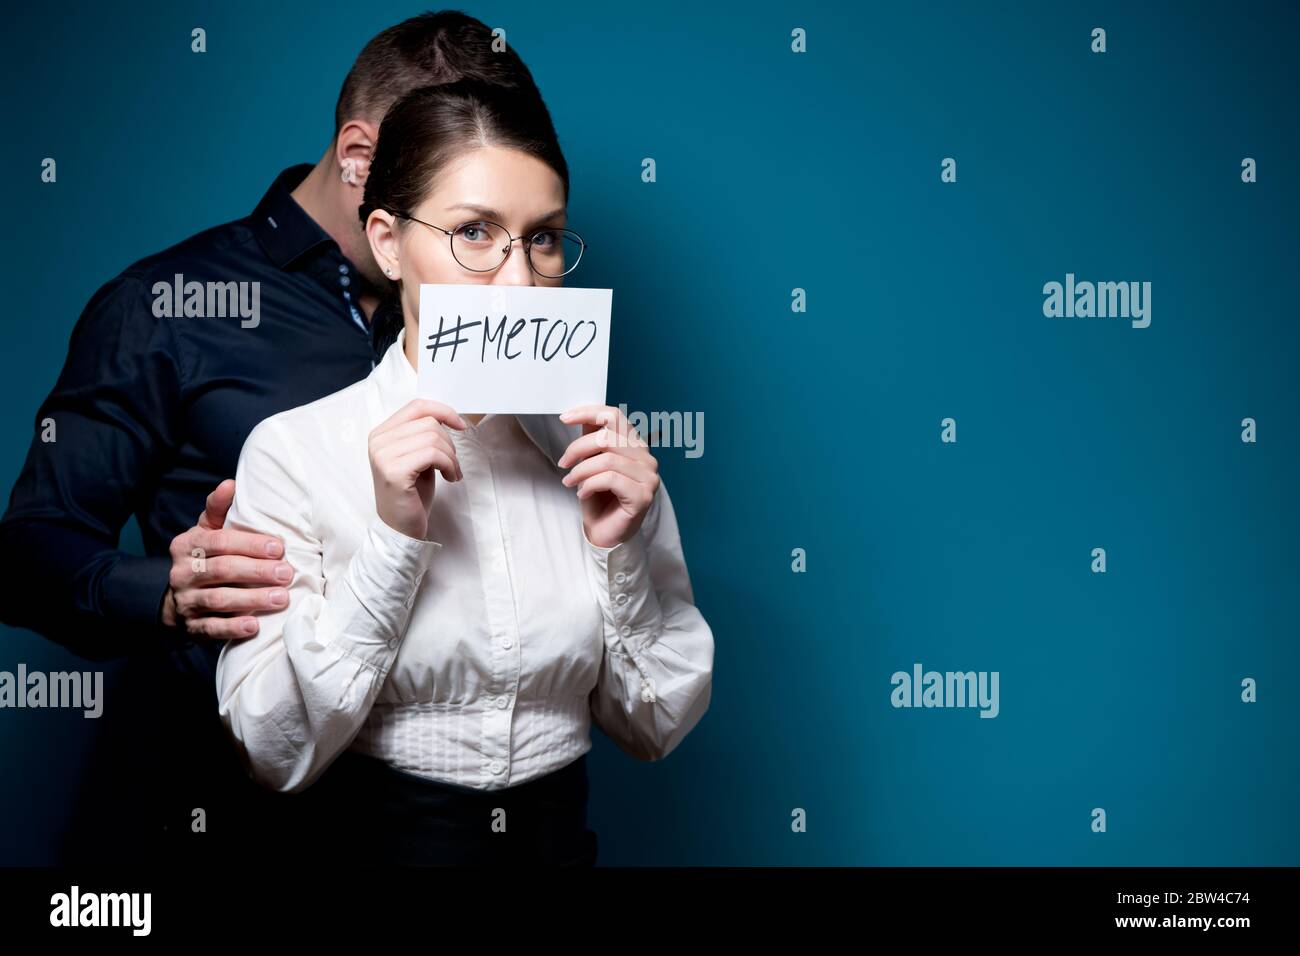 une femme porte un signe avec une inscription metoo, et derrière elle se trouve une silhouette d'homme dans une obscurité Banque D'Images